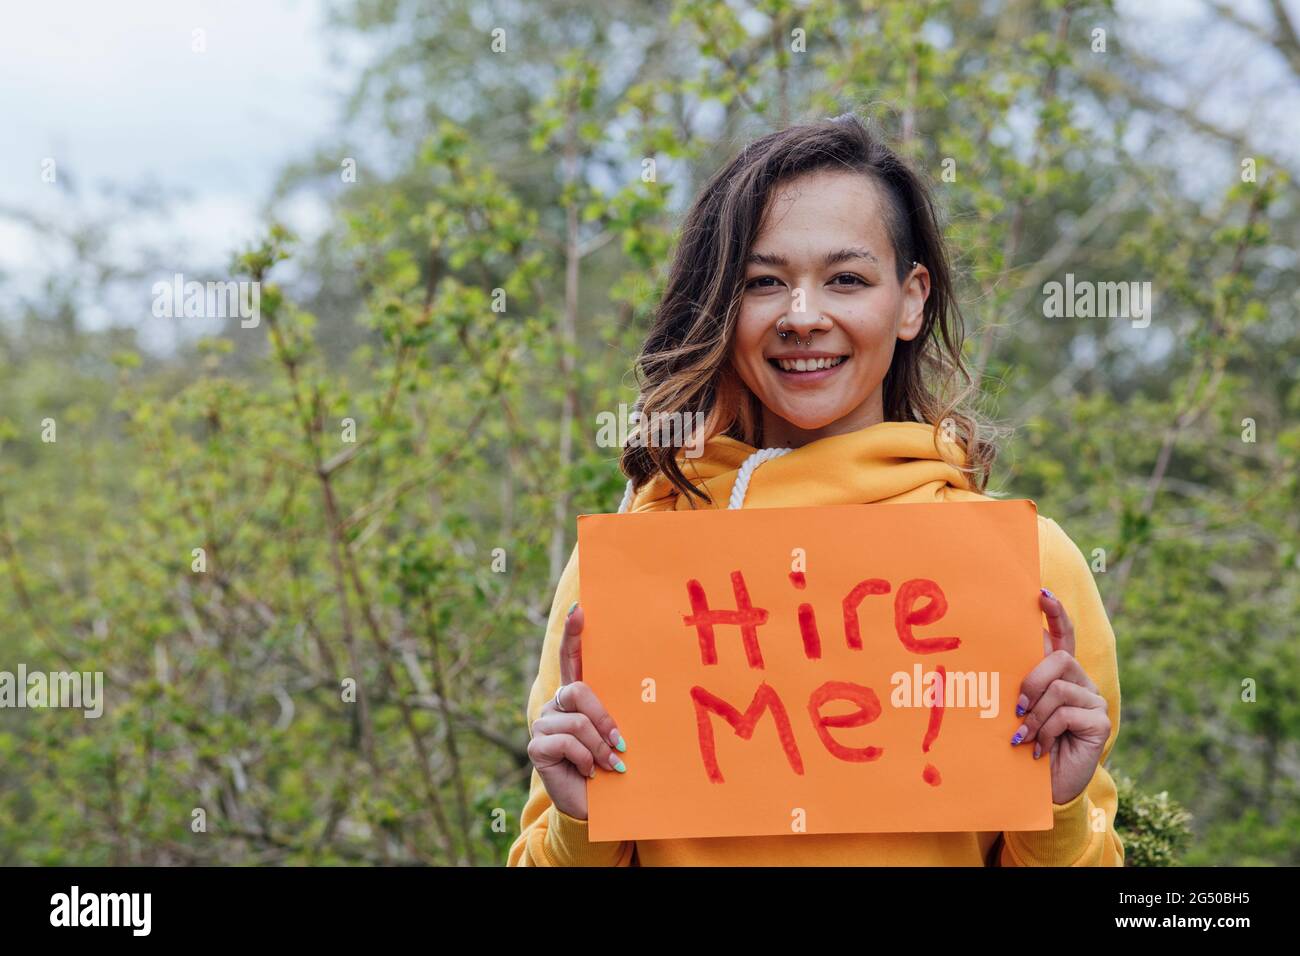 Una giovane donna in piedi fuori di fronte agli alberi, tenendo un pezzo di carta con 'noleggiarmi' su di esso. Sta guardando la macchina fotografica e sorridendo. Foto Stock